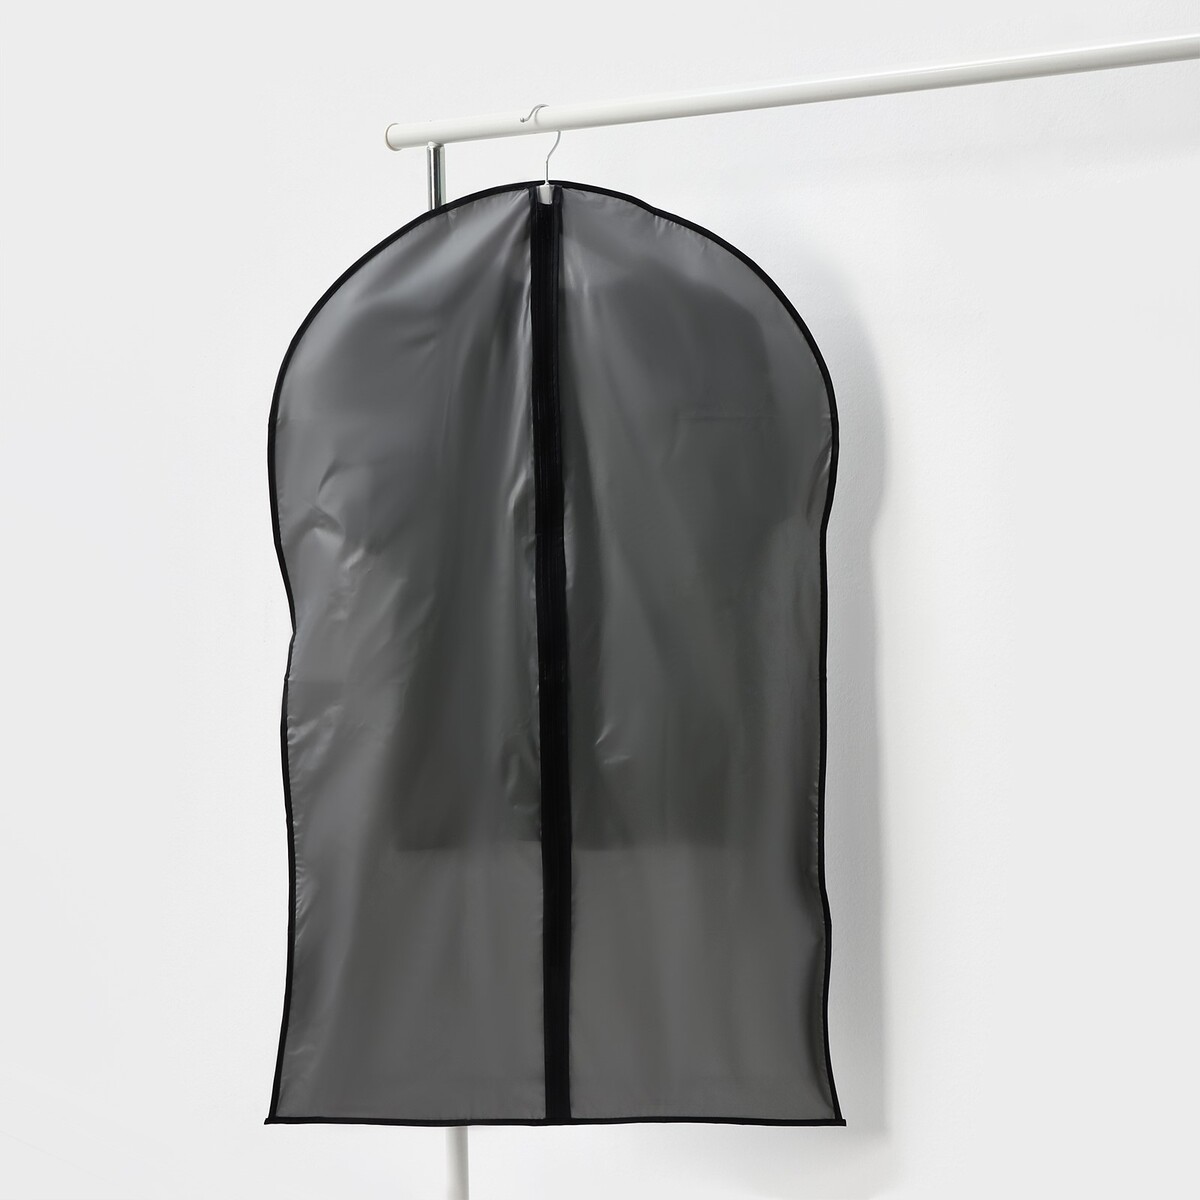 Чехол для одежды 60×100 см, плотный пвх, цвет серый Доляна 01205526 - фото 3